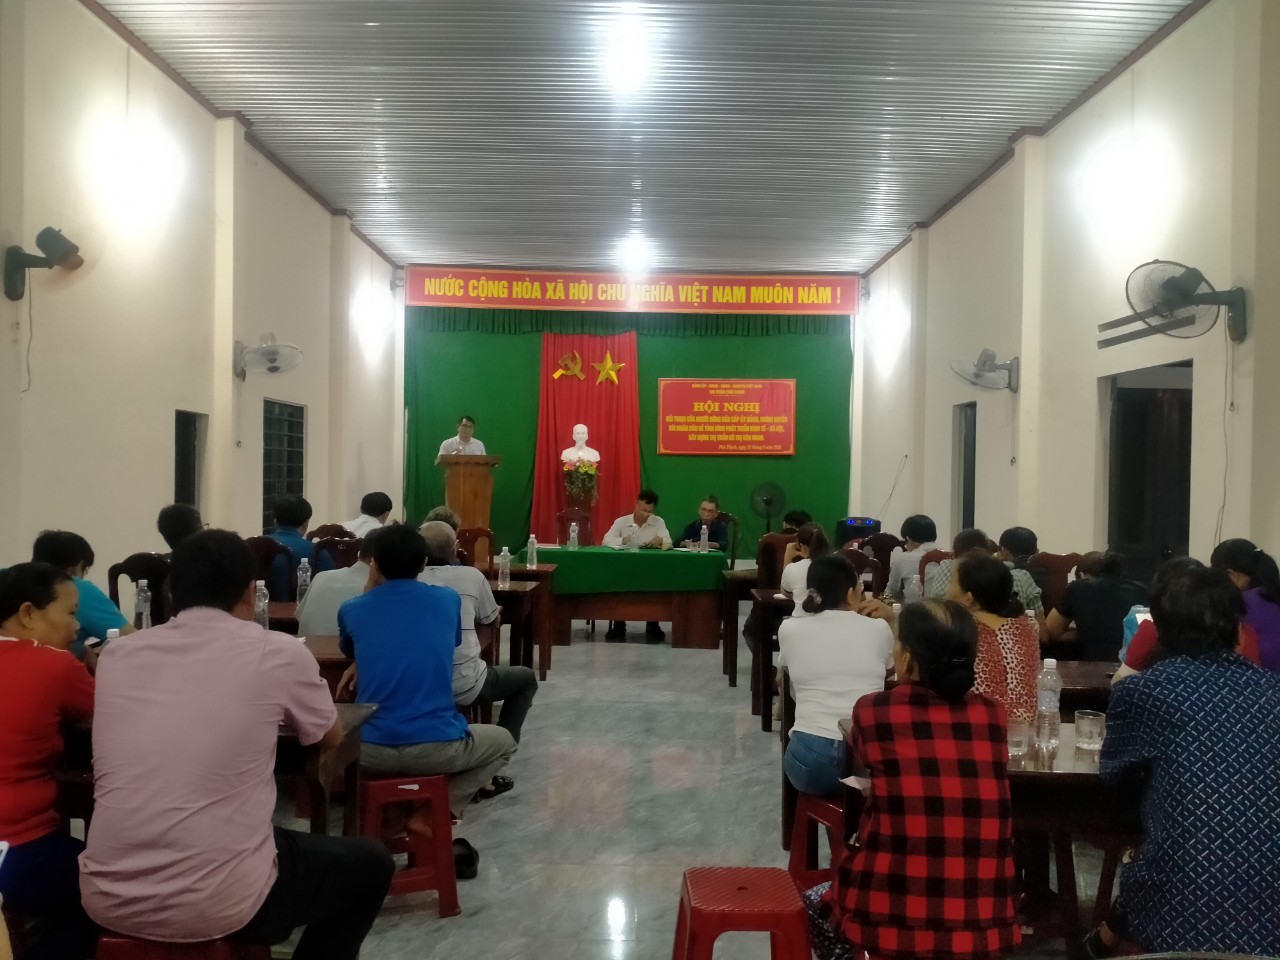 Đảng ủy – UBND – UBMTTQVN thị trấn Phú Thịnh tổ chức hội nghị đối thoại giữa người đứng đầu cấp ủy Đảng, Chính quyền với nhân dân